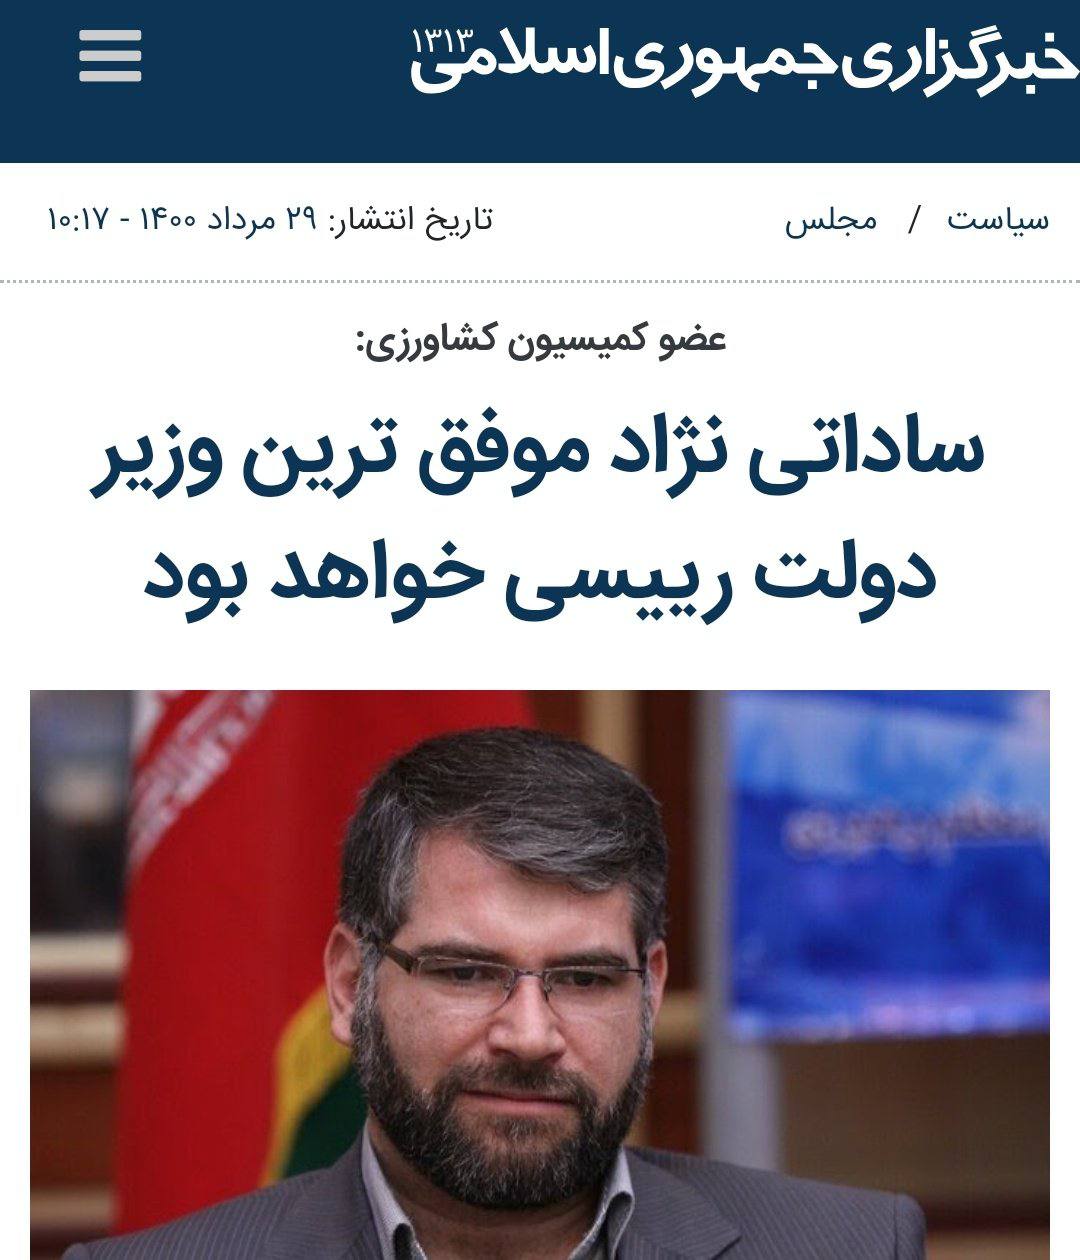 فساد آقای وزیر، خبرگزاری دولت را آچمز کرد!